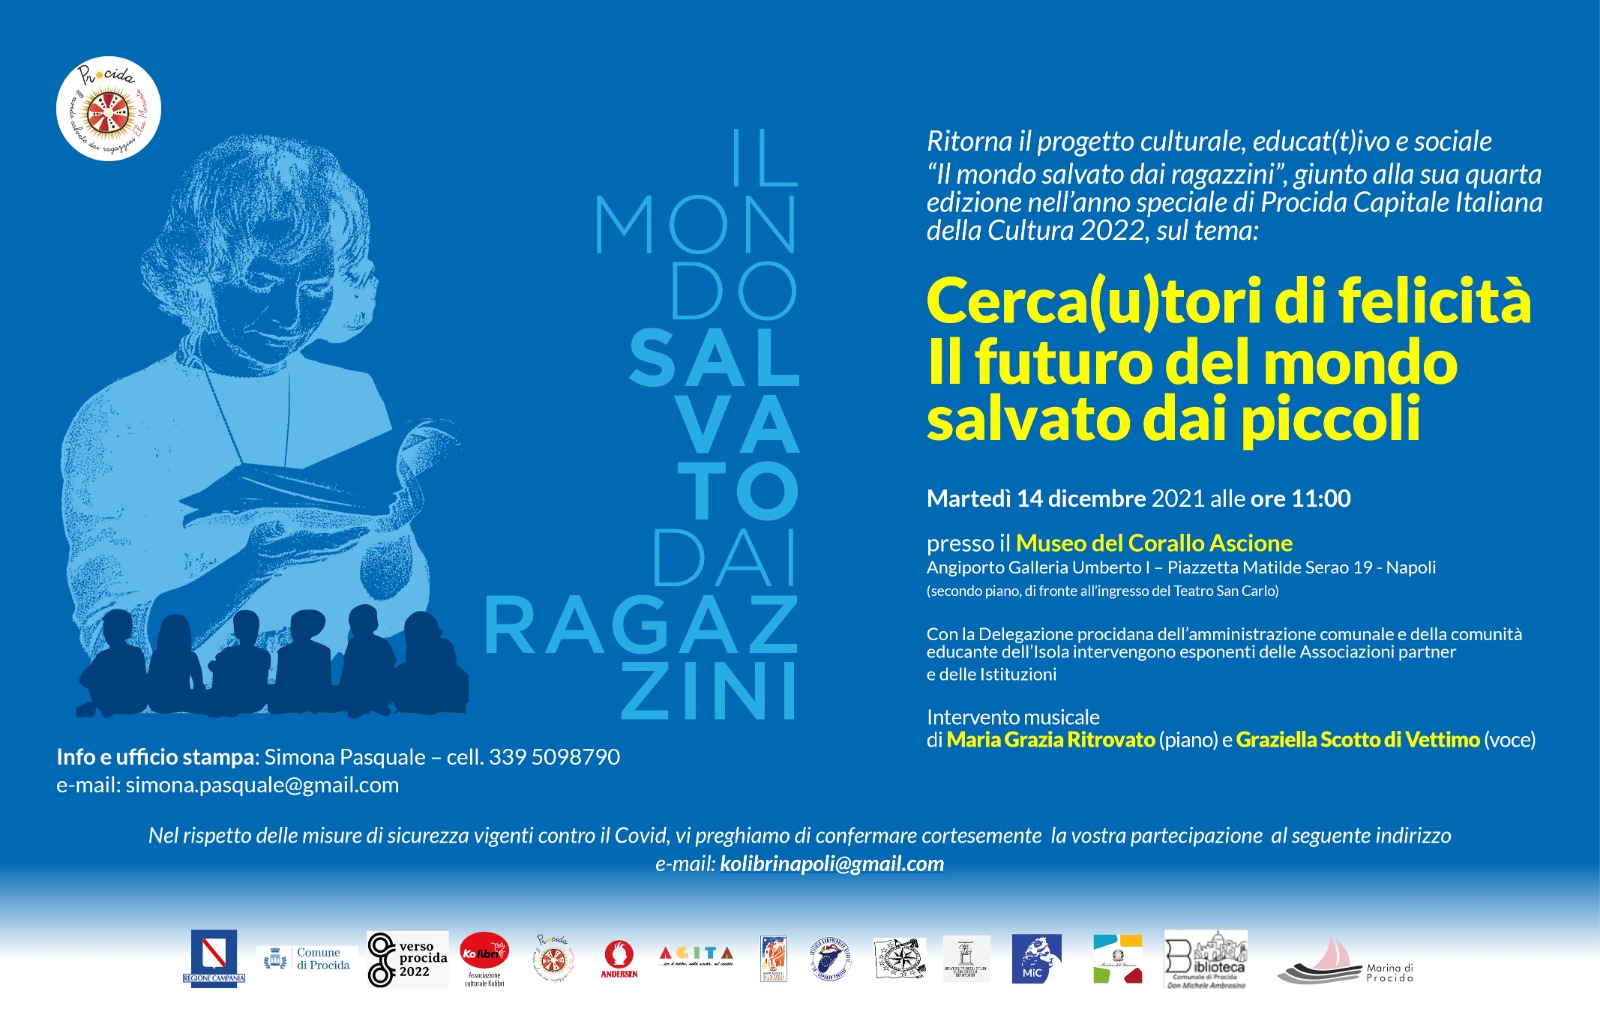 Conferenza stampa di presentazione della IV edizione del progetto/premio «Il mondo salvato dai ragazzini». Martedì 14 dicembre 2021, ore 11:00, Museo del Corallo Ascione di Napoli 